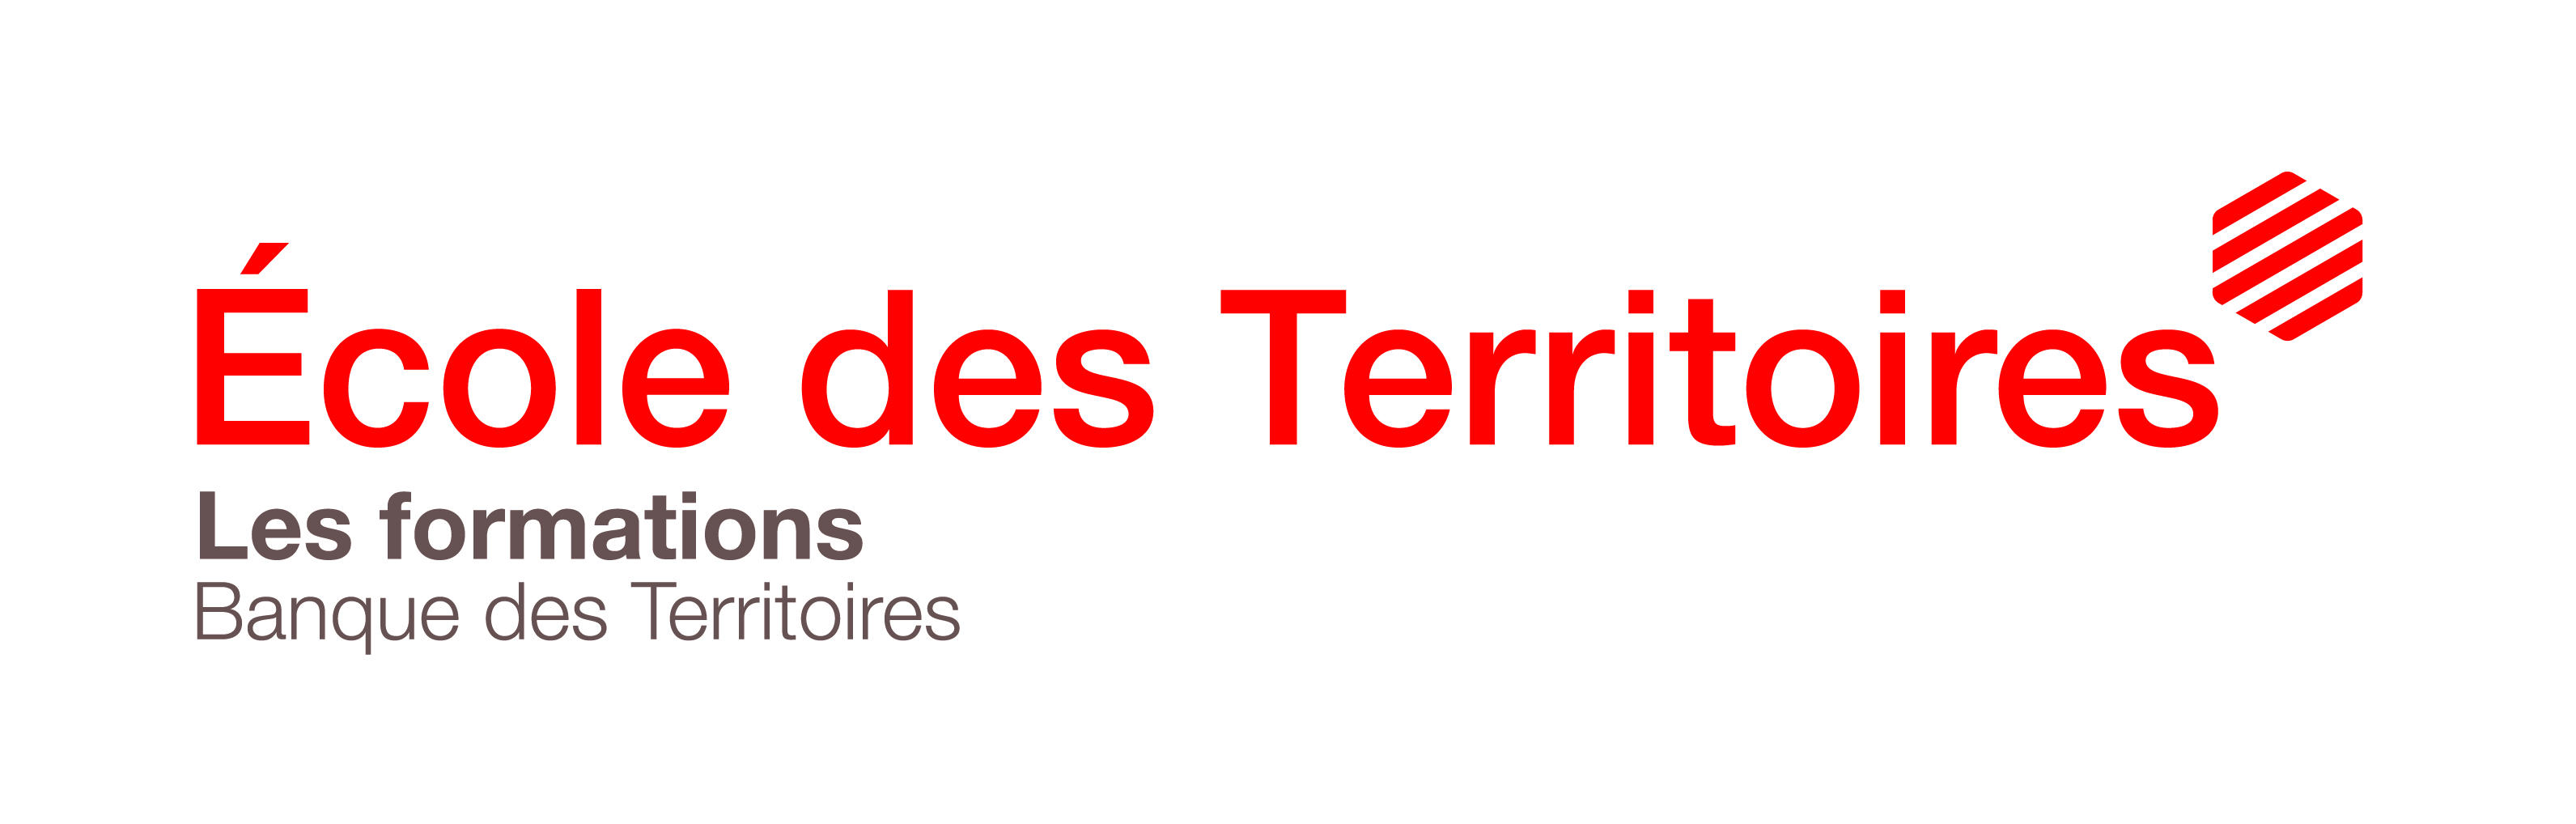 BDT_ECOLE DES TERRITOIRES_QUADRI_Avec baseline.jpg